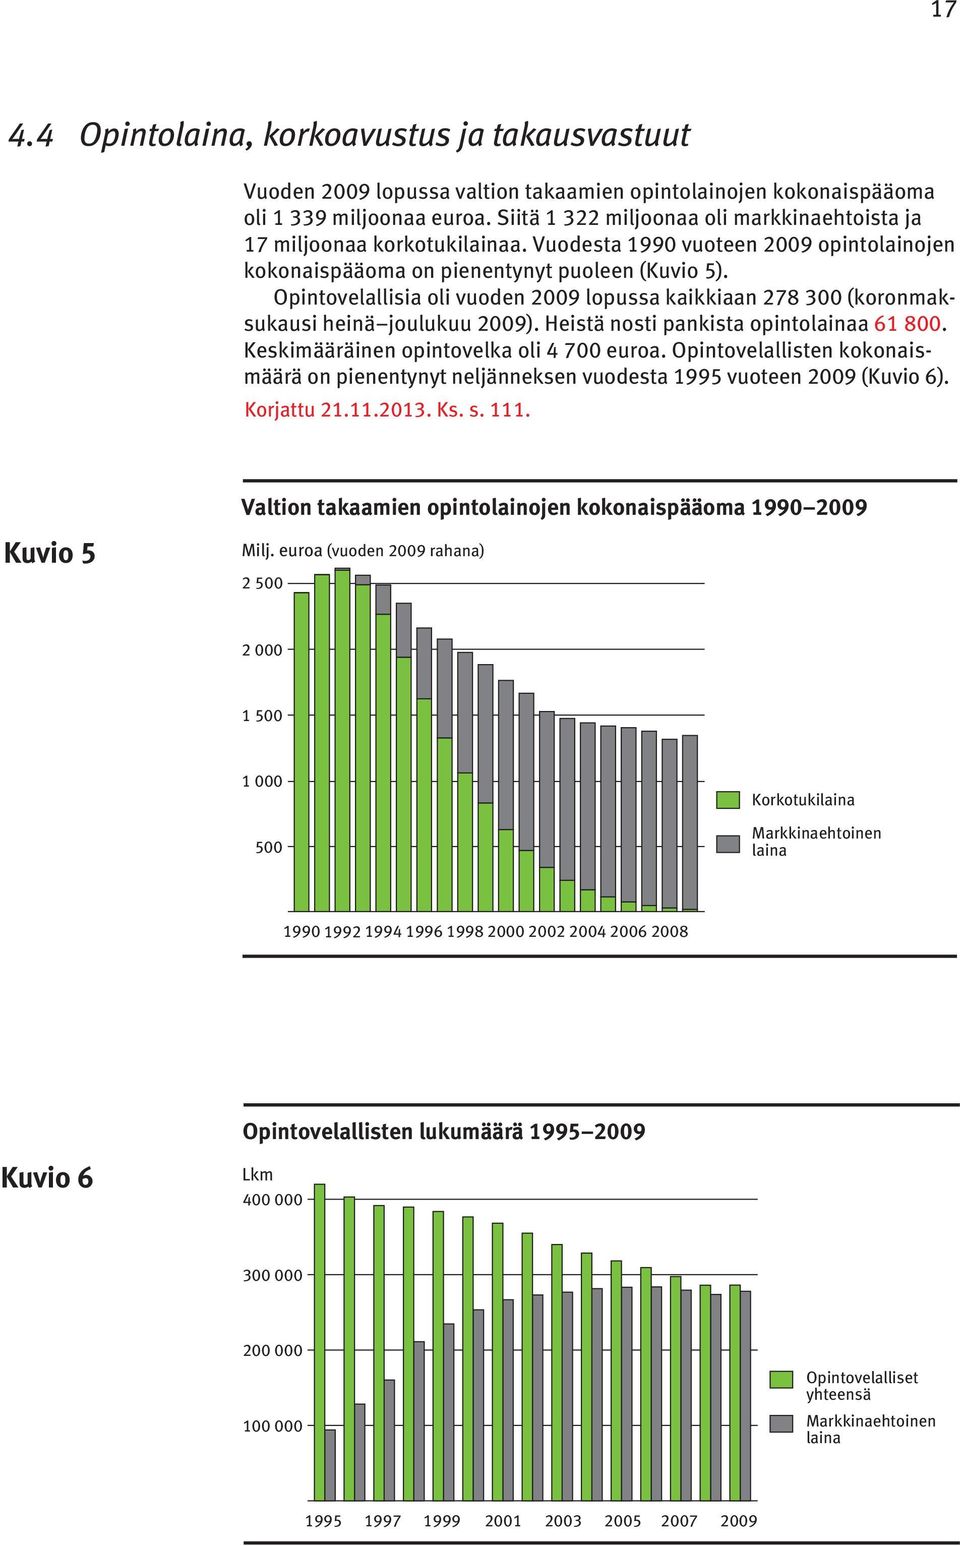 Opintovelallisia oli vuoden 2009 lopussa kaikkiaan 278 300 (koronmaksukausi heinä joulukuu 2009). Heistä nosti pankista opintolainaa 61 800. Keskimääräinen opintovelka oli 4 700 euroa.